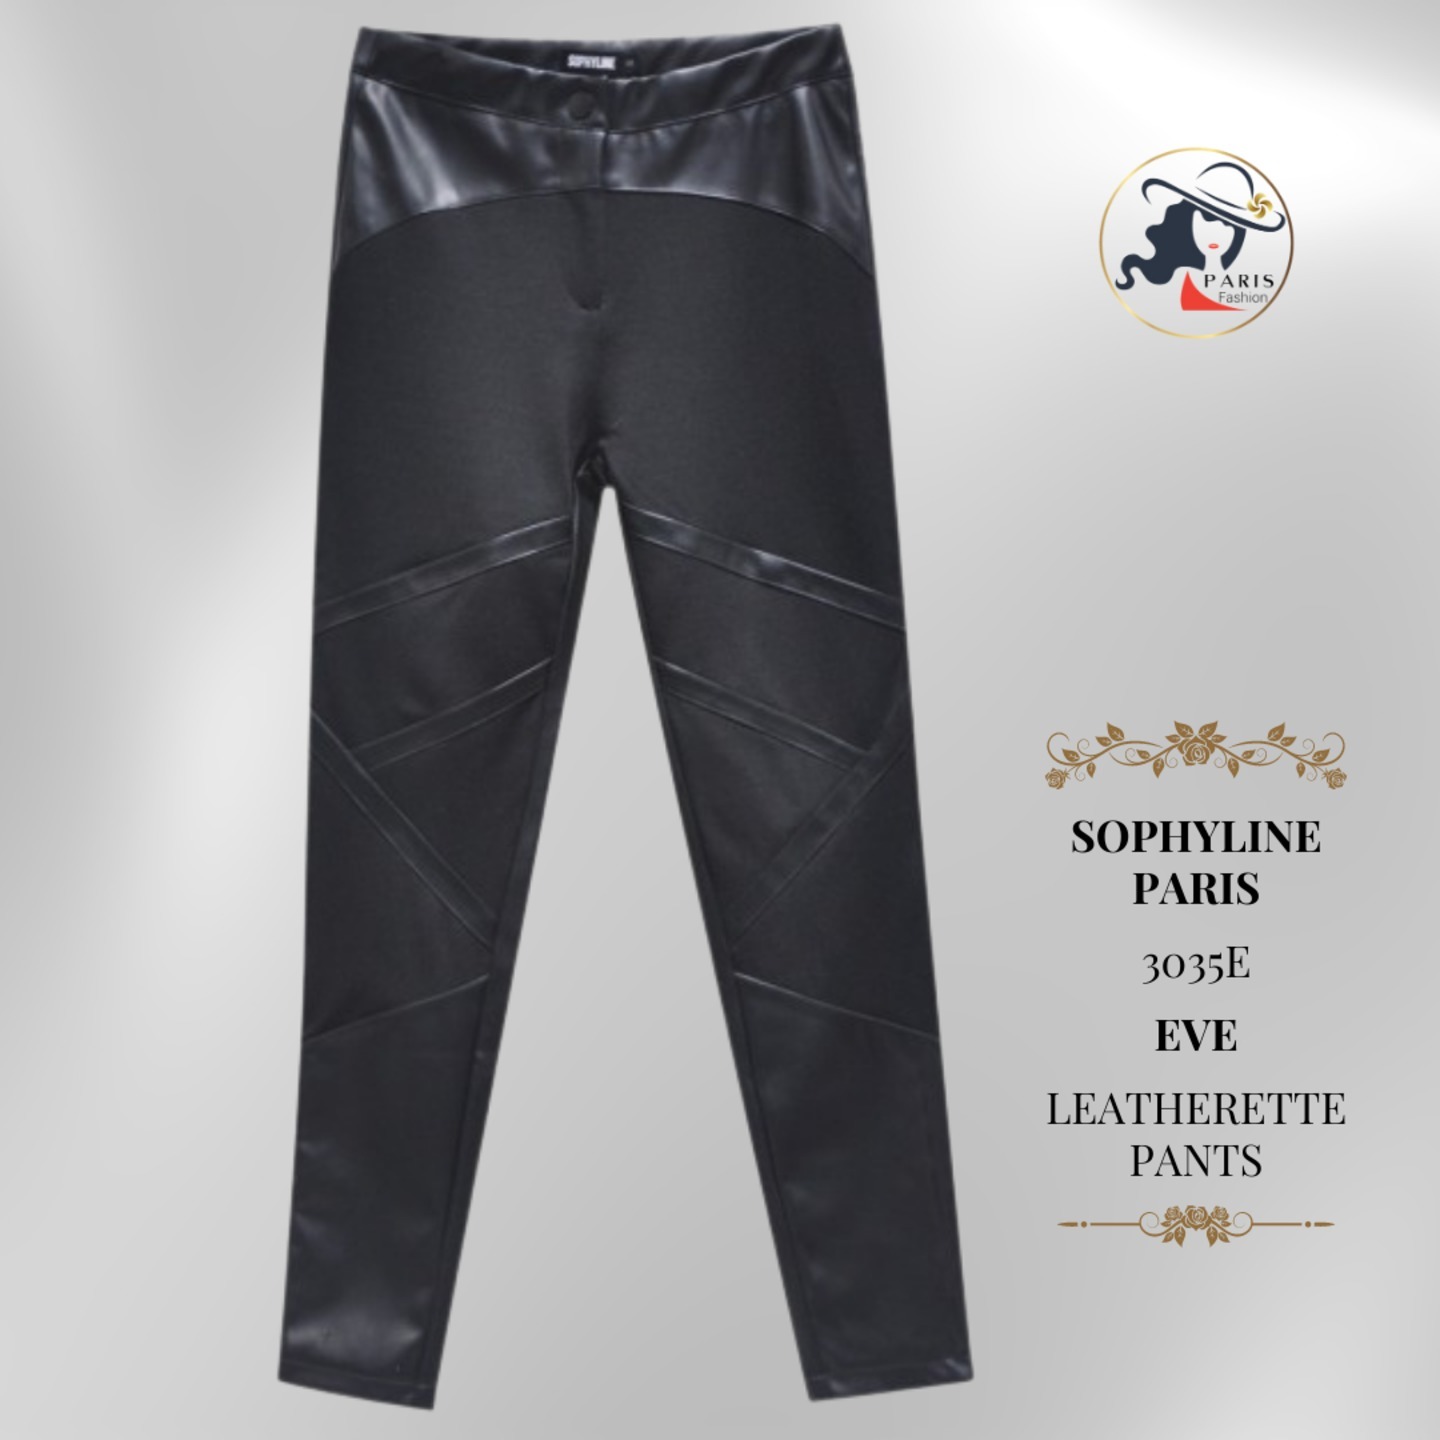 SOPHYLINE PARIS  3035E  EVE  LEATHERETTE PANTS